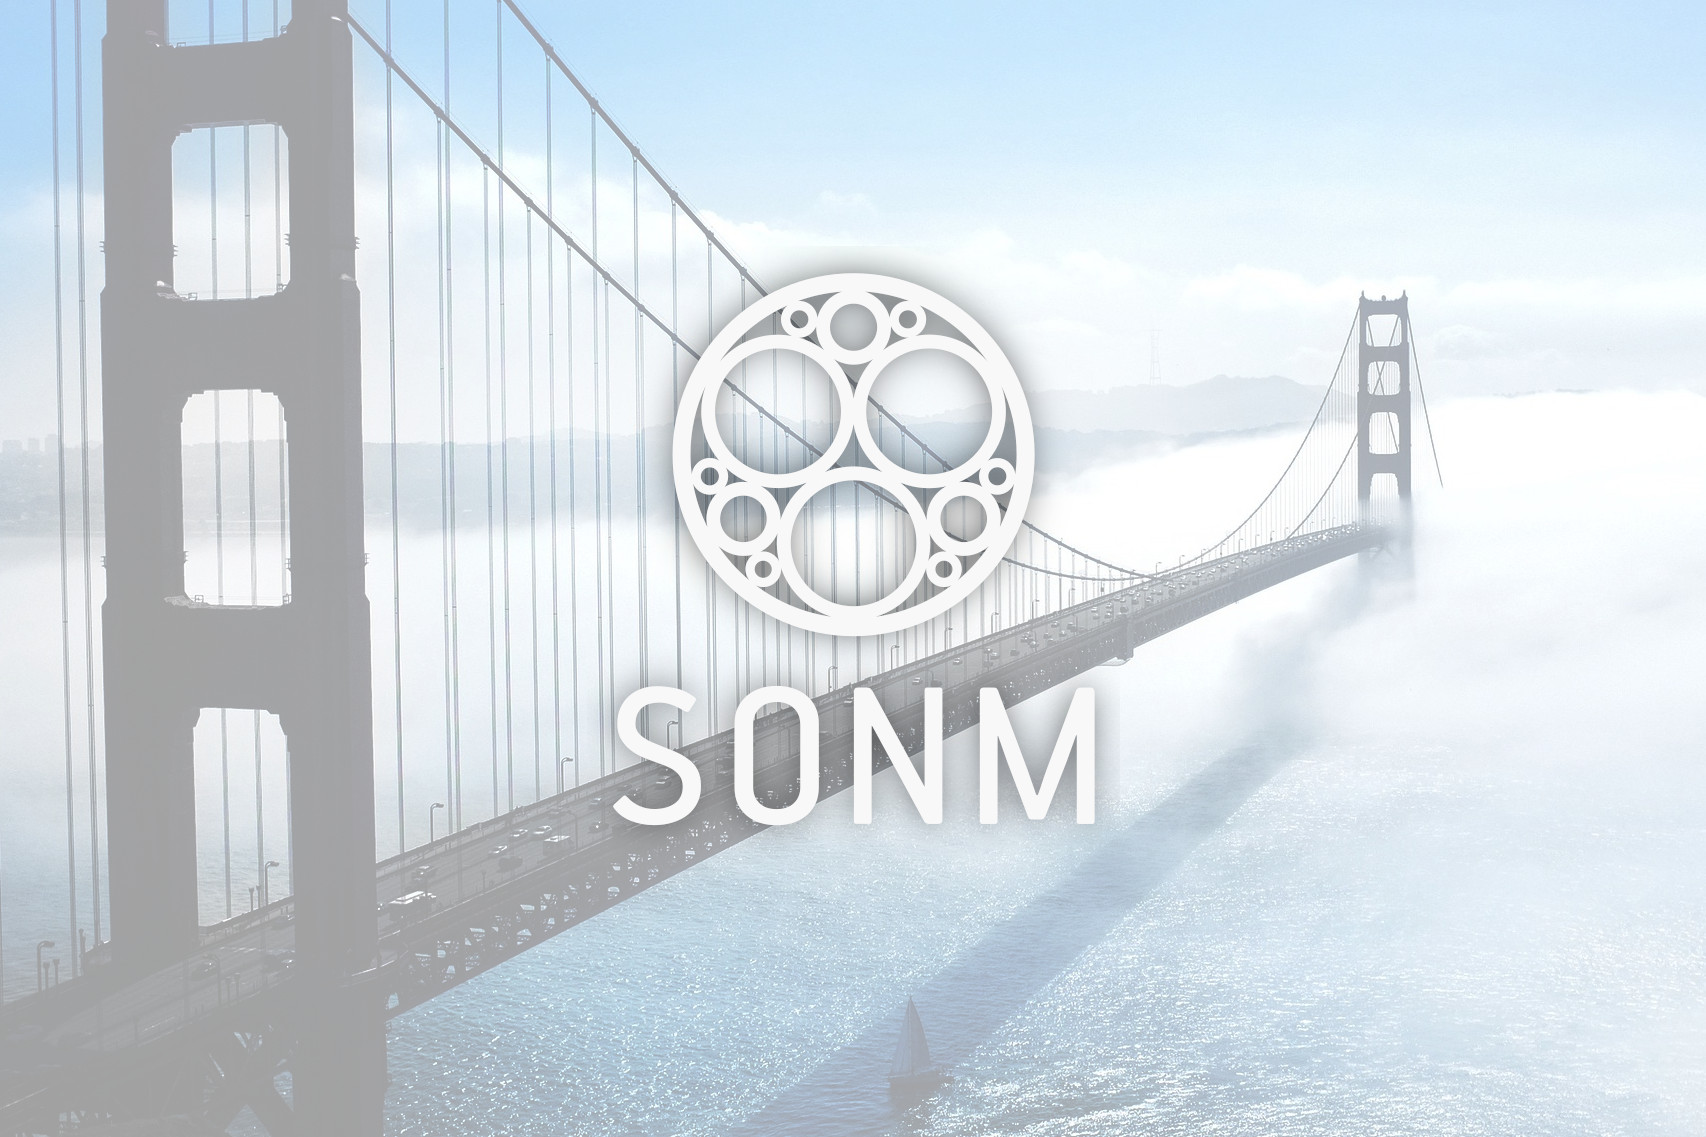 SONM Fog Computing Q&A